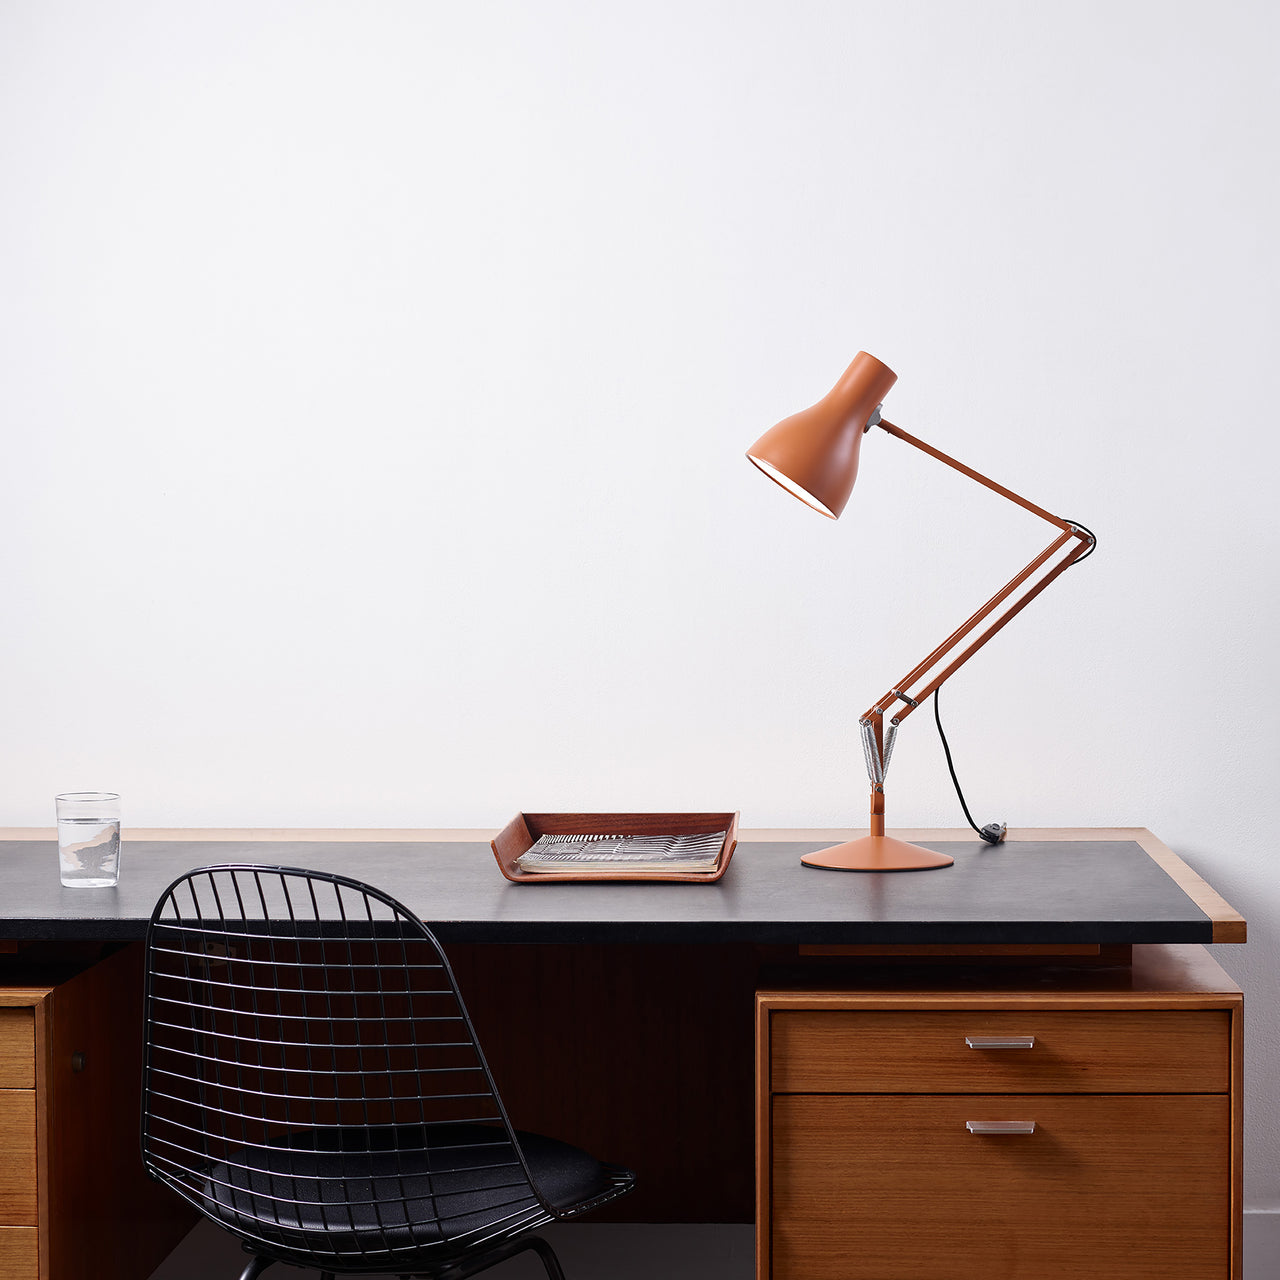 Type 75 Desk Lamp: Margaret Howell Edition